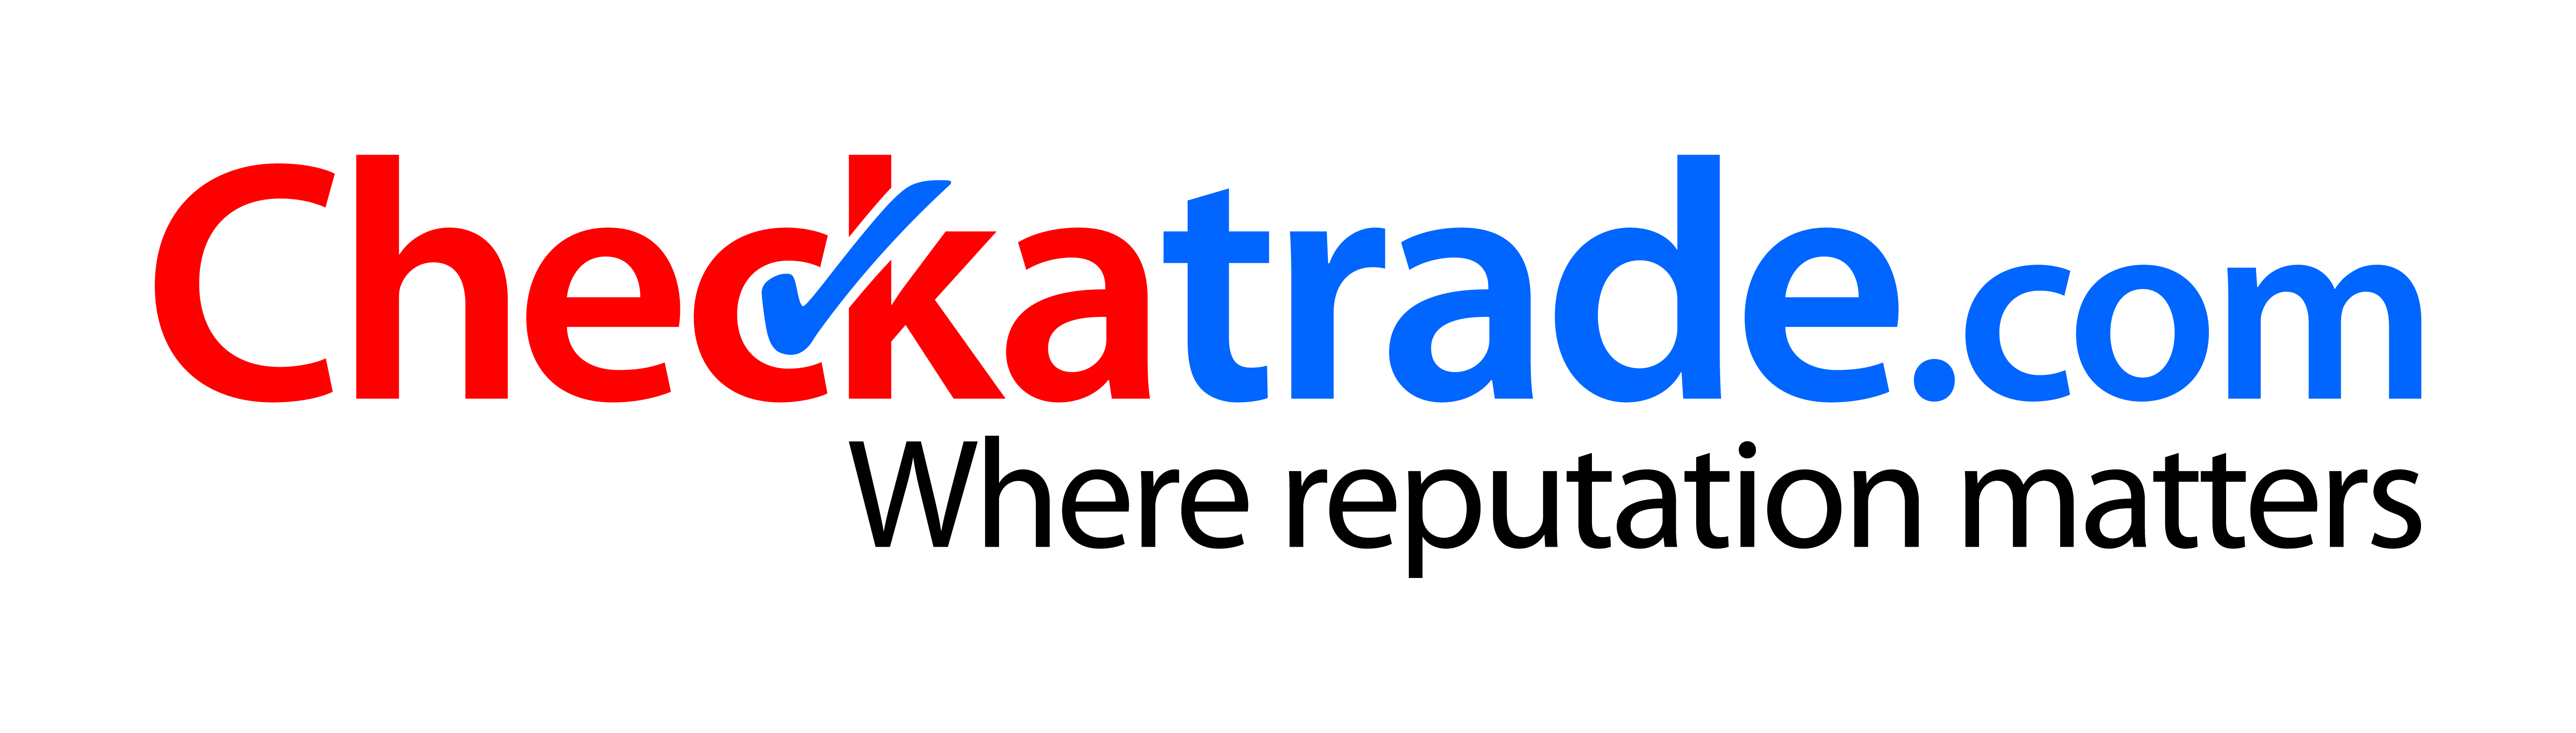 checkatrade.com- logo